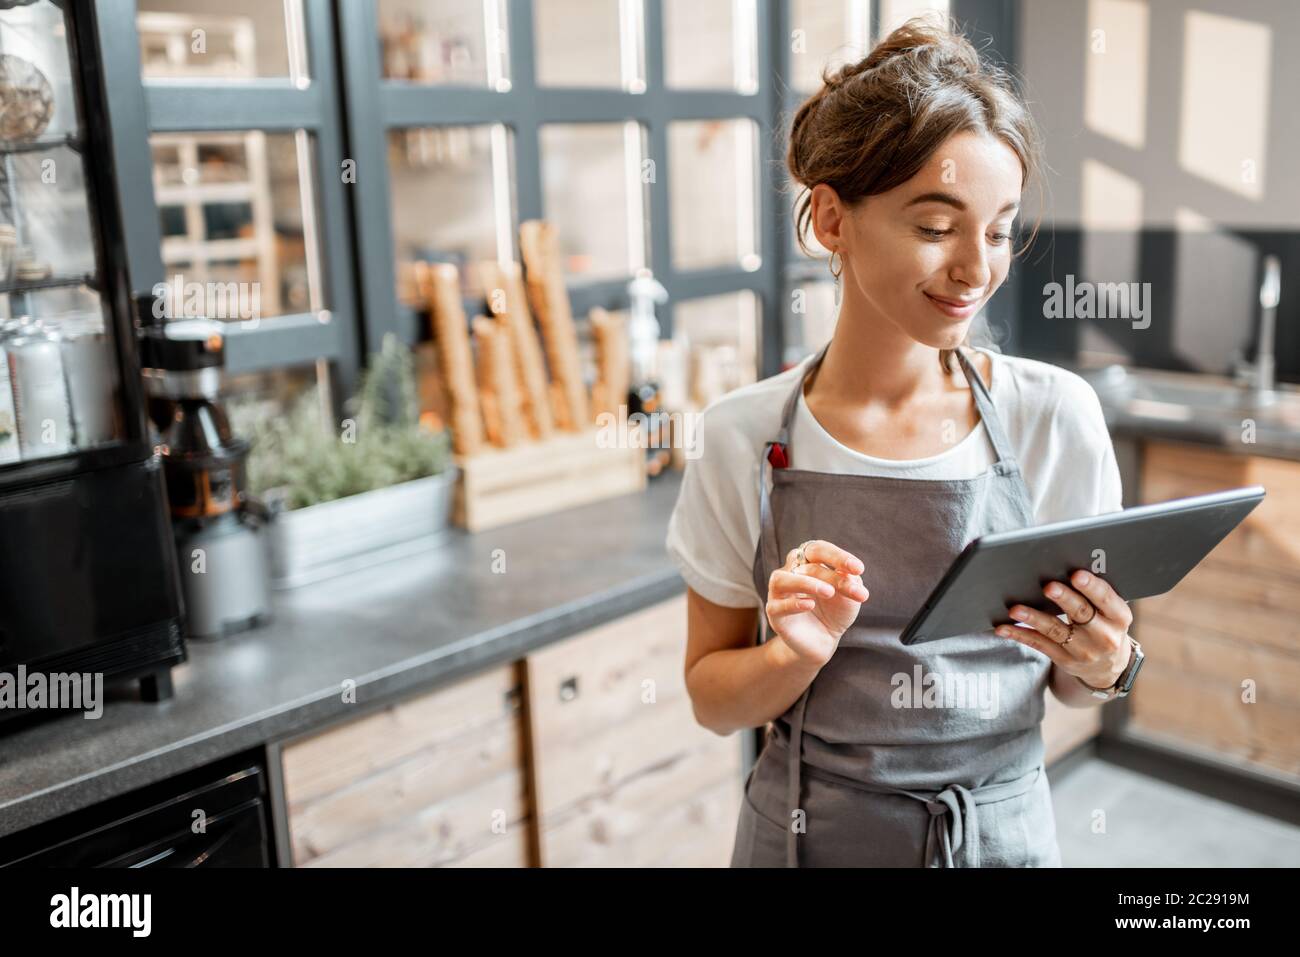 Jeune vendeuse travaillant avec une tablette numérique au comptoir d'un café ou d'un magasin de confiserie. Concept de petite entreprise et technologies dans le domaine des services Banque D'Images